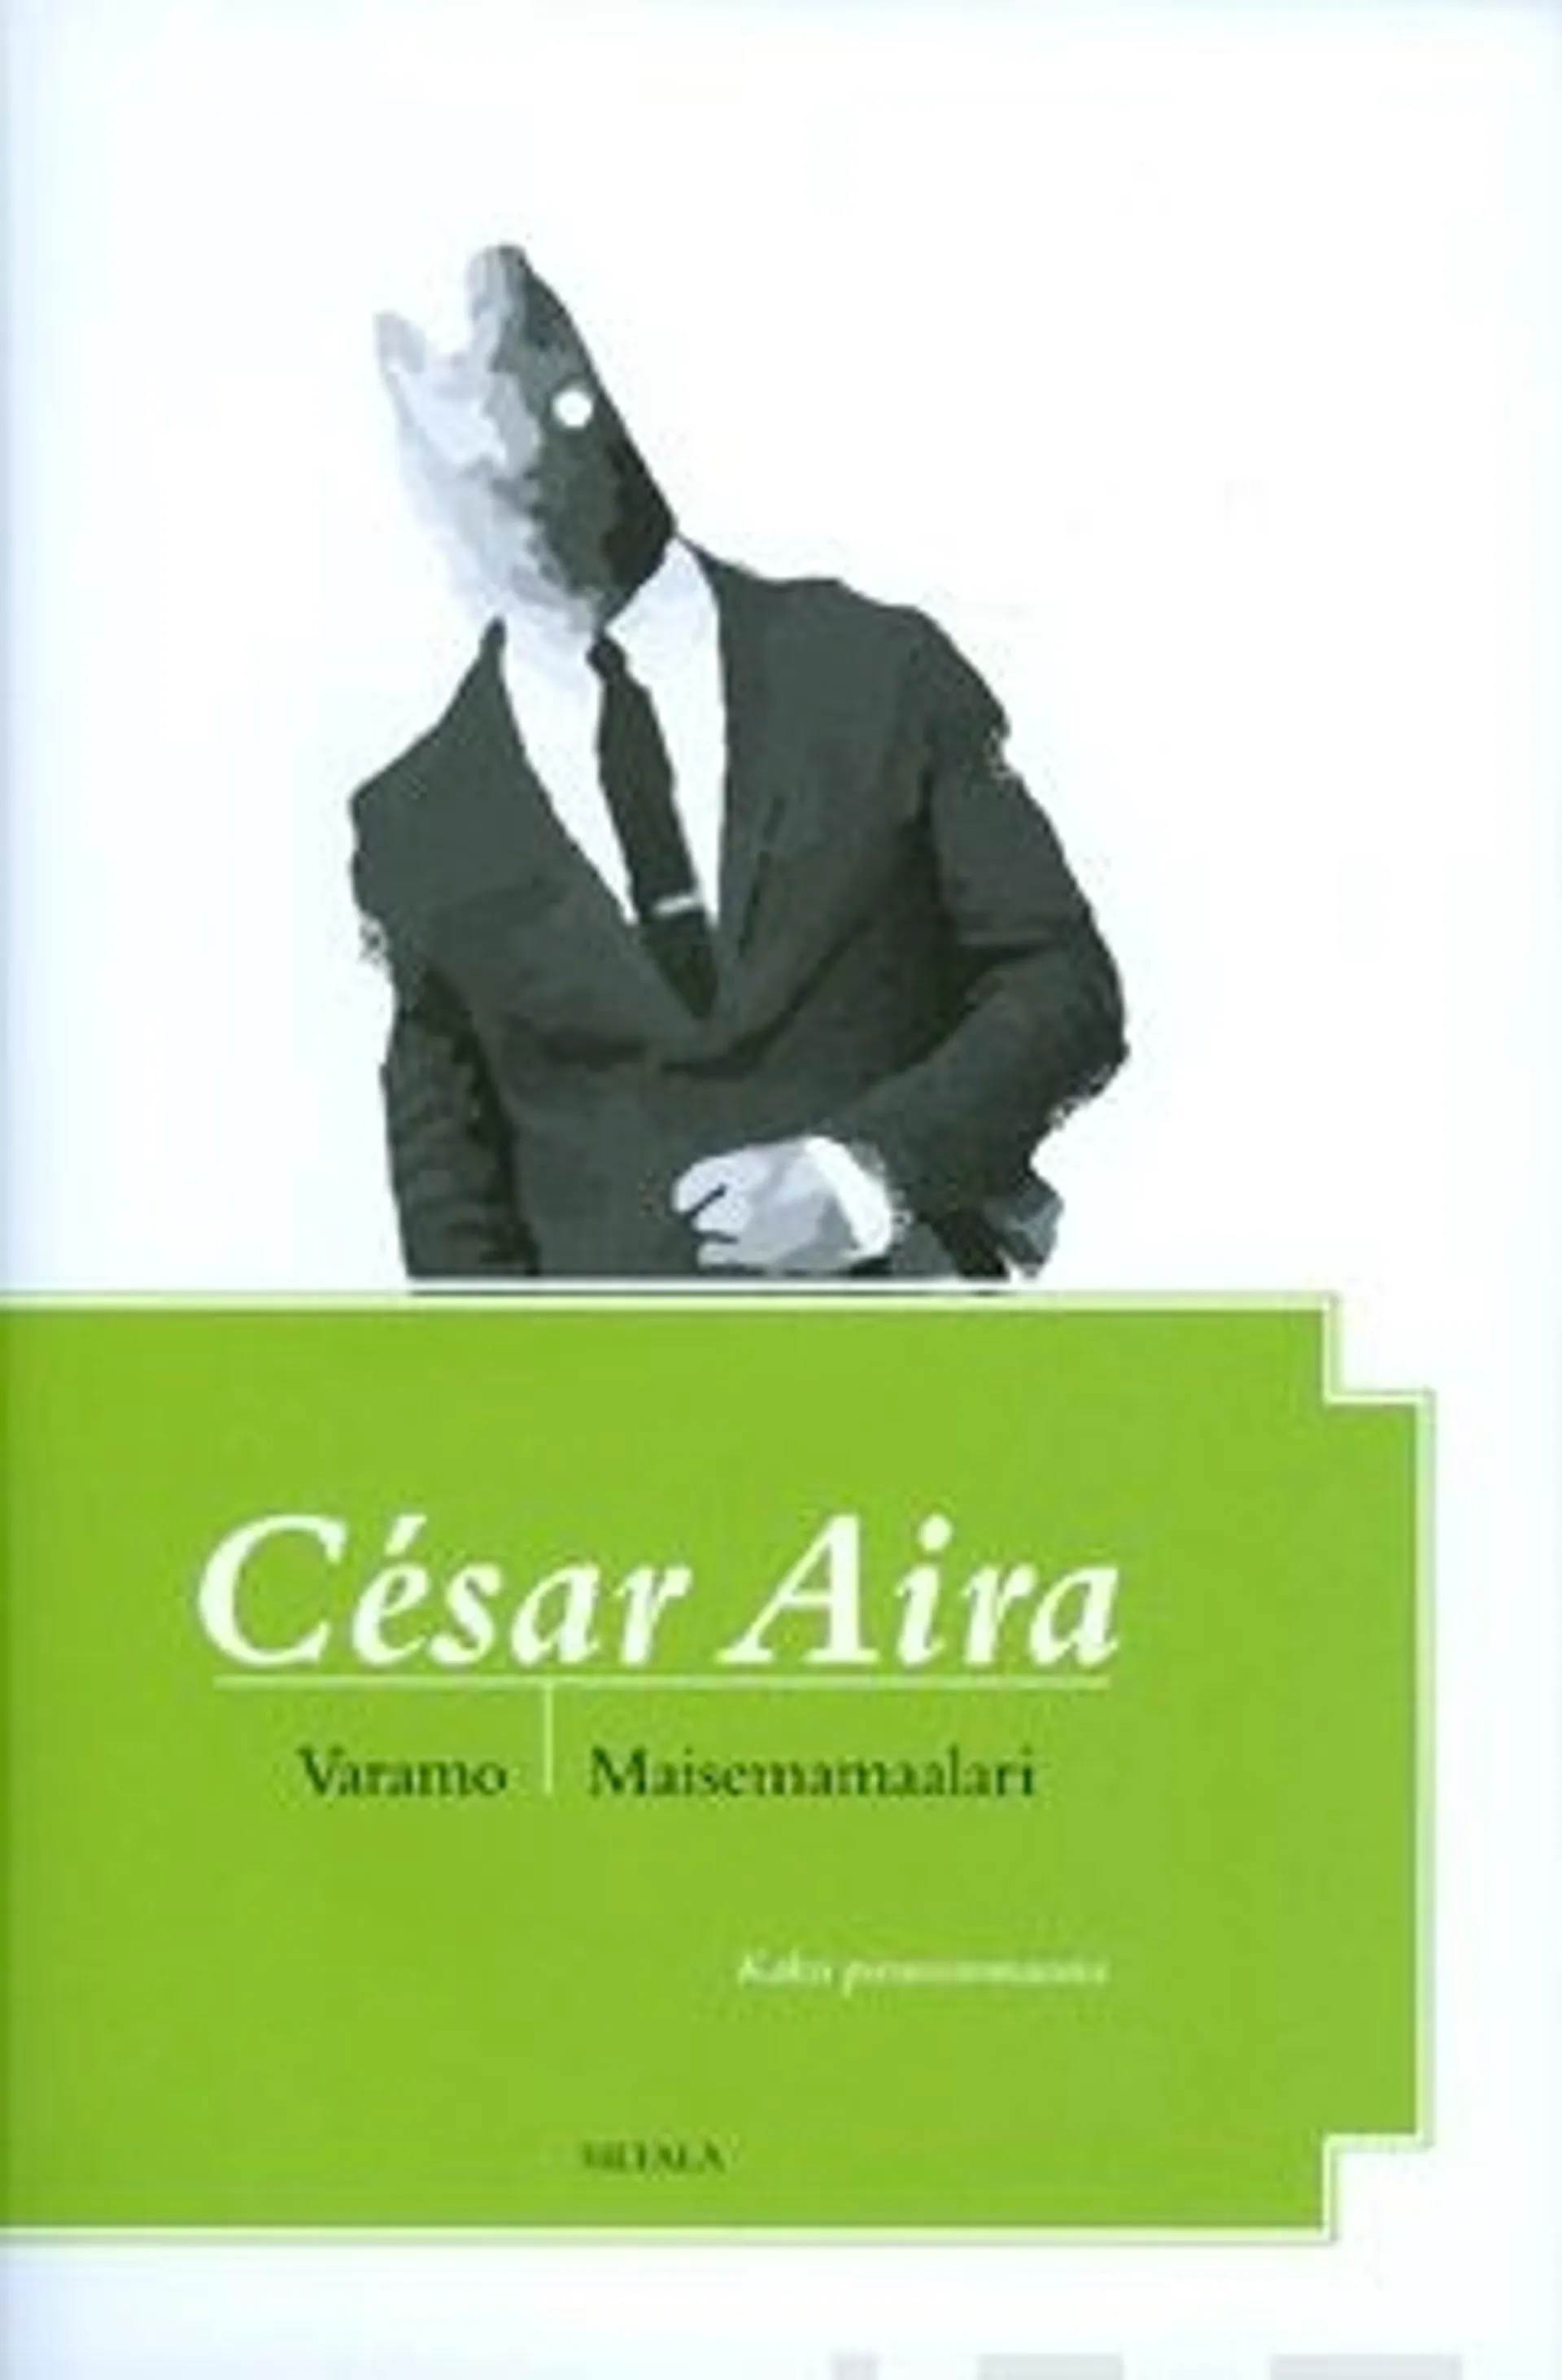 Cesar, Varamo/Maisemamaalari